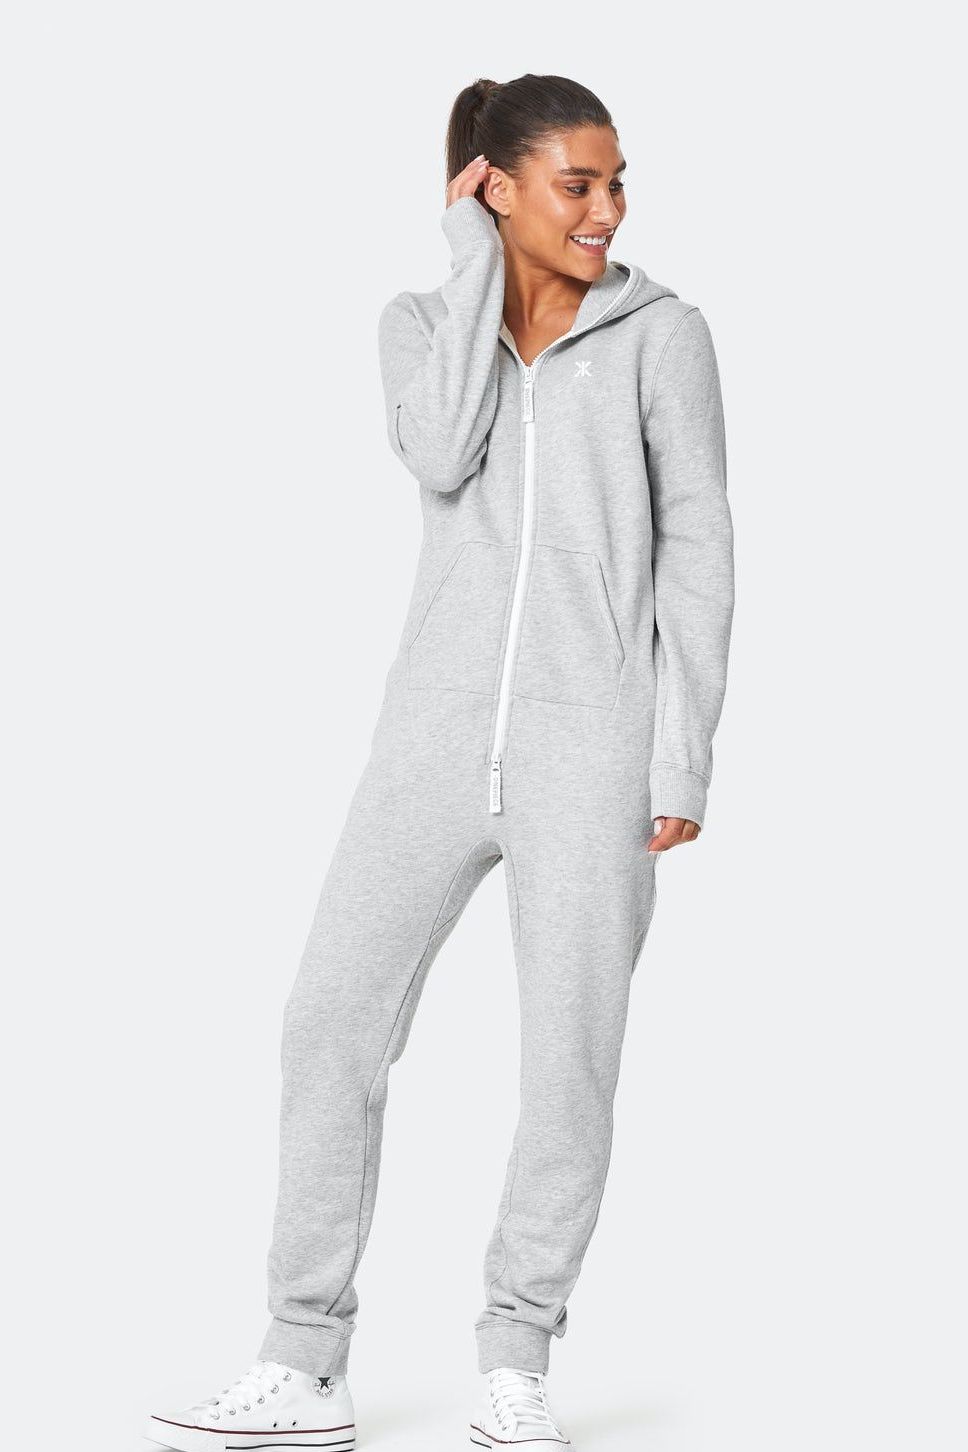 Mens Onesie Pajamas for Mens Loungewear Pajamas Hoodie Jumpsuits Sleepwear  Warm Sherpa Zipper Hooded Loungewear at  Men’s Clothing store